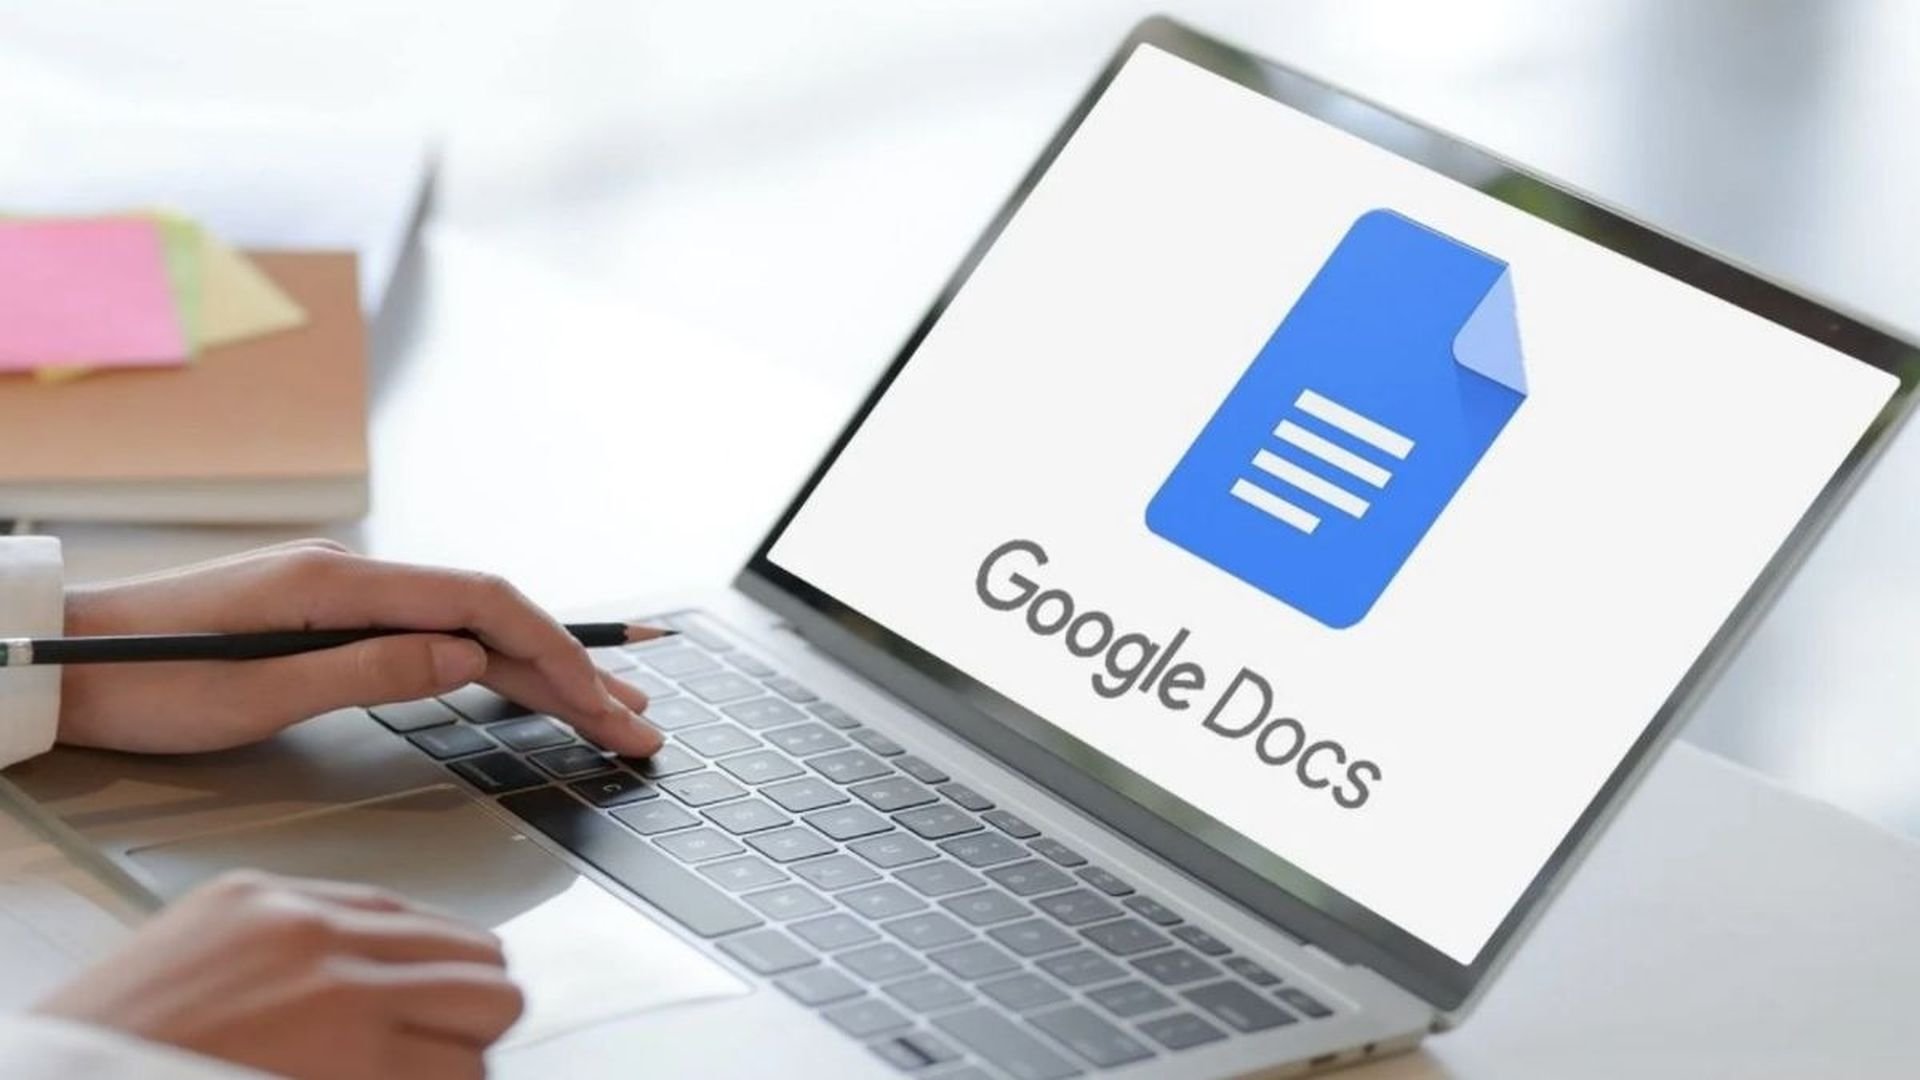 Come fare pedice in Google Docs?